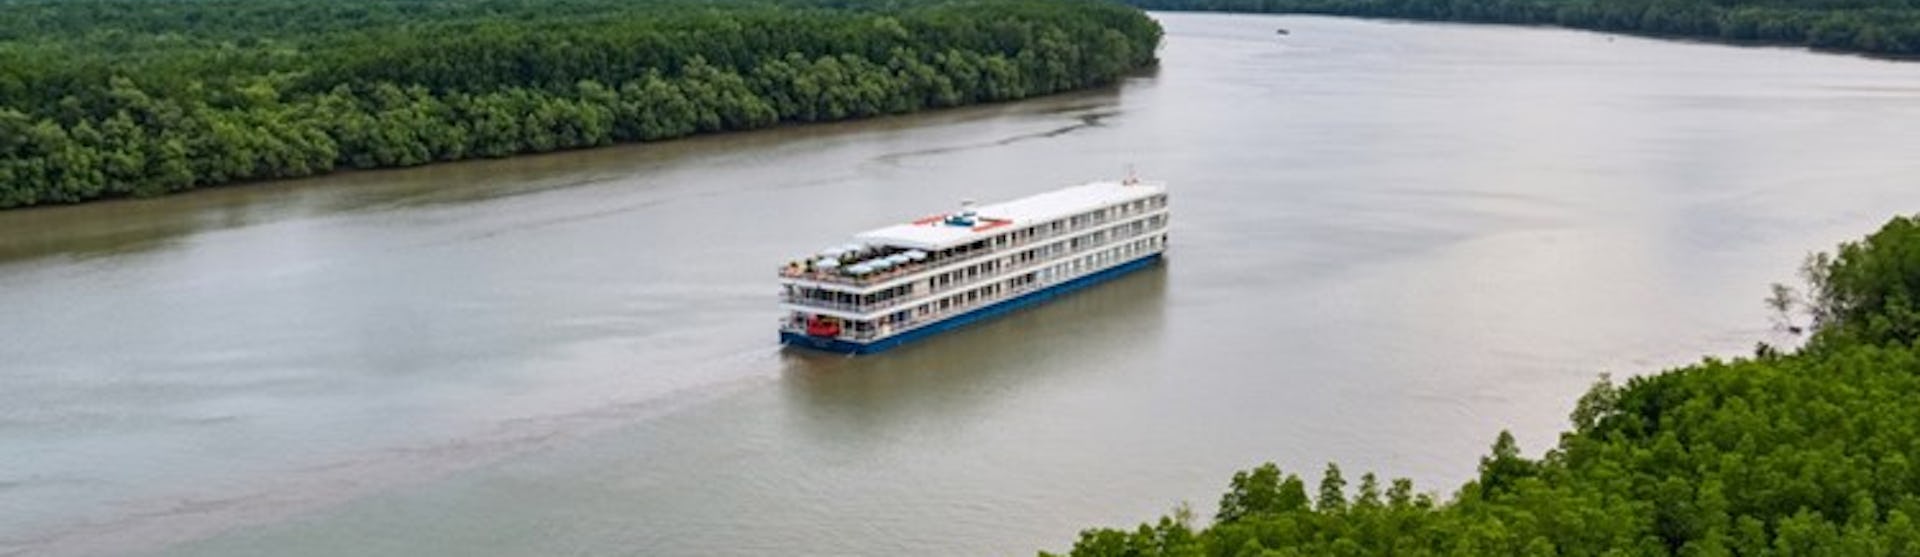 Flusskreuzfahrtschiff Mekong Juwel während der Fahrt